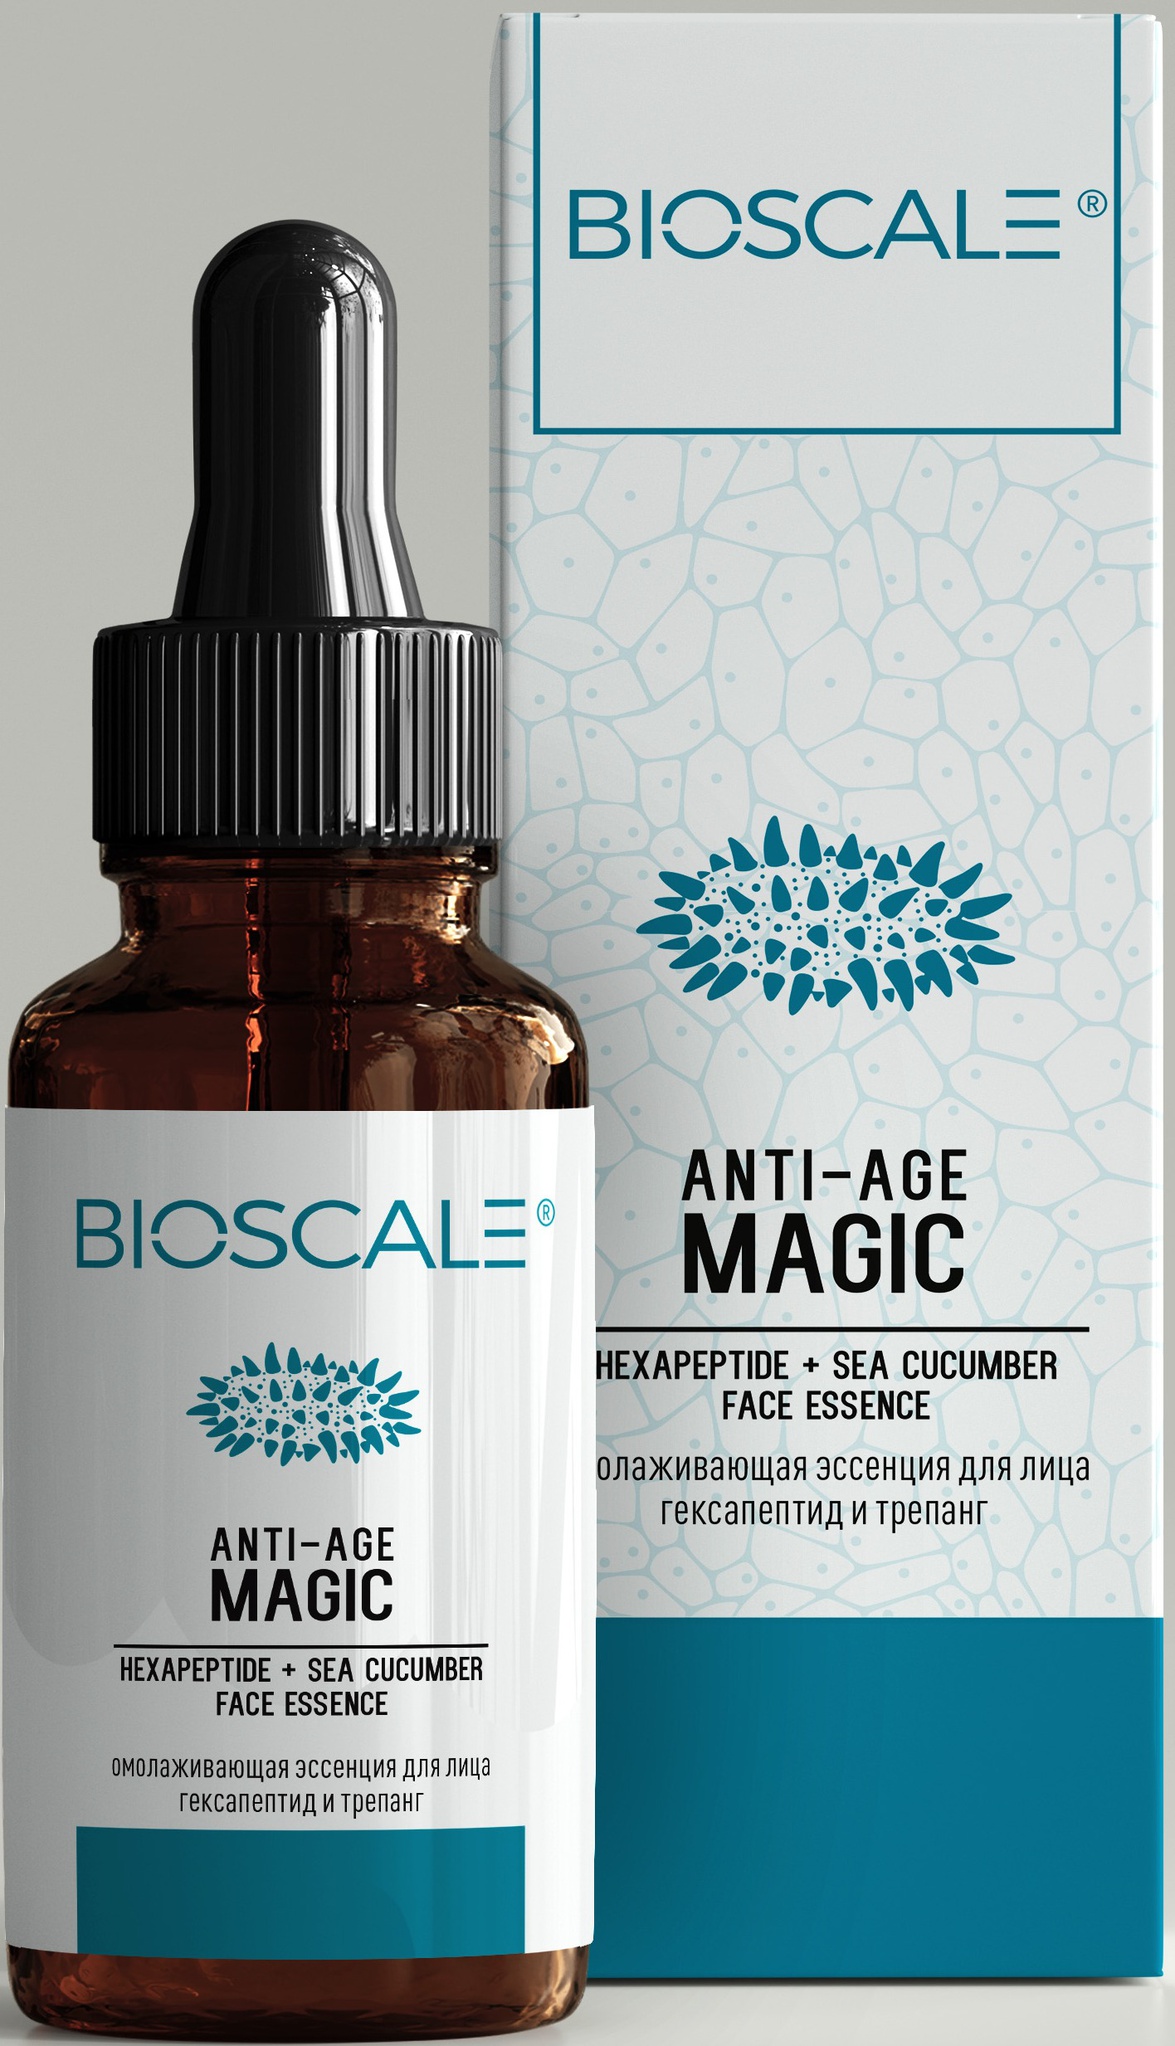 Bioscale Anti-age Magic, Face Essence, Hexapeptide + Sea Cucumber